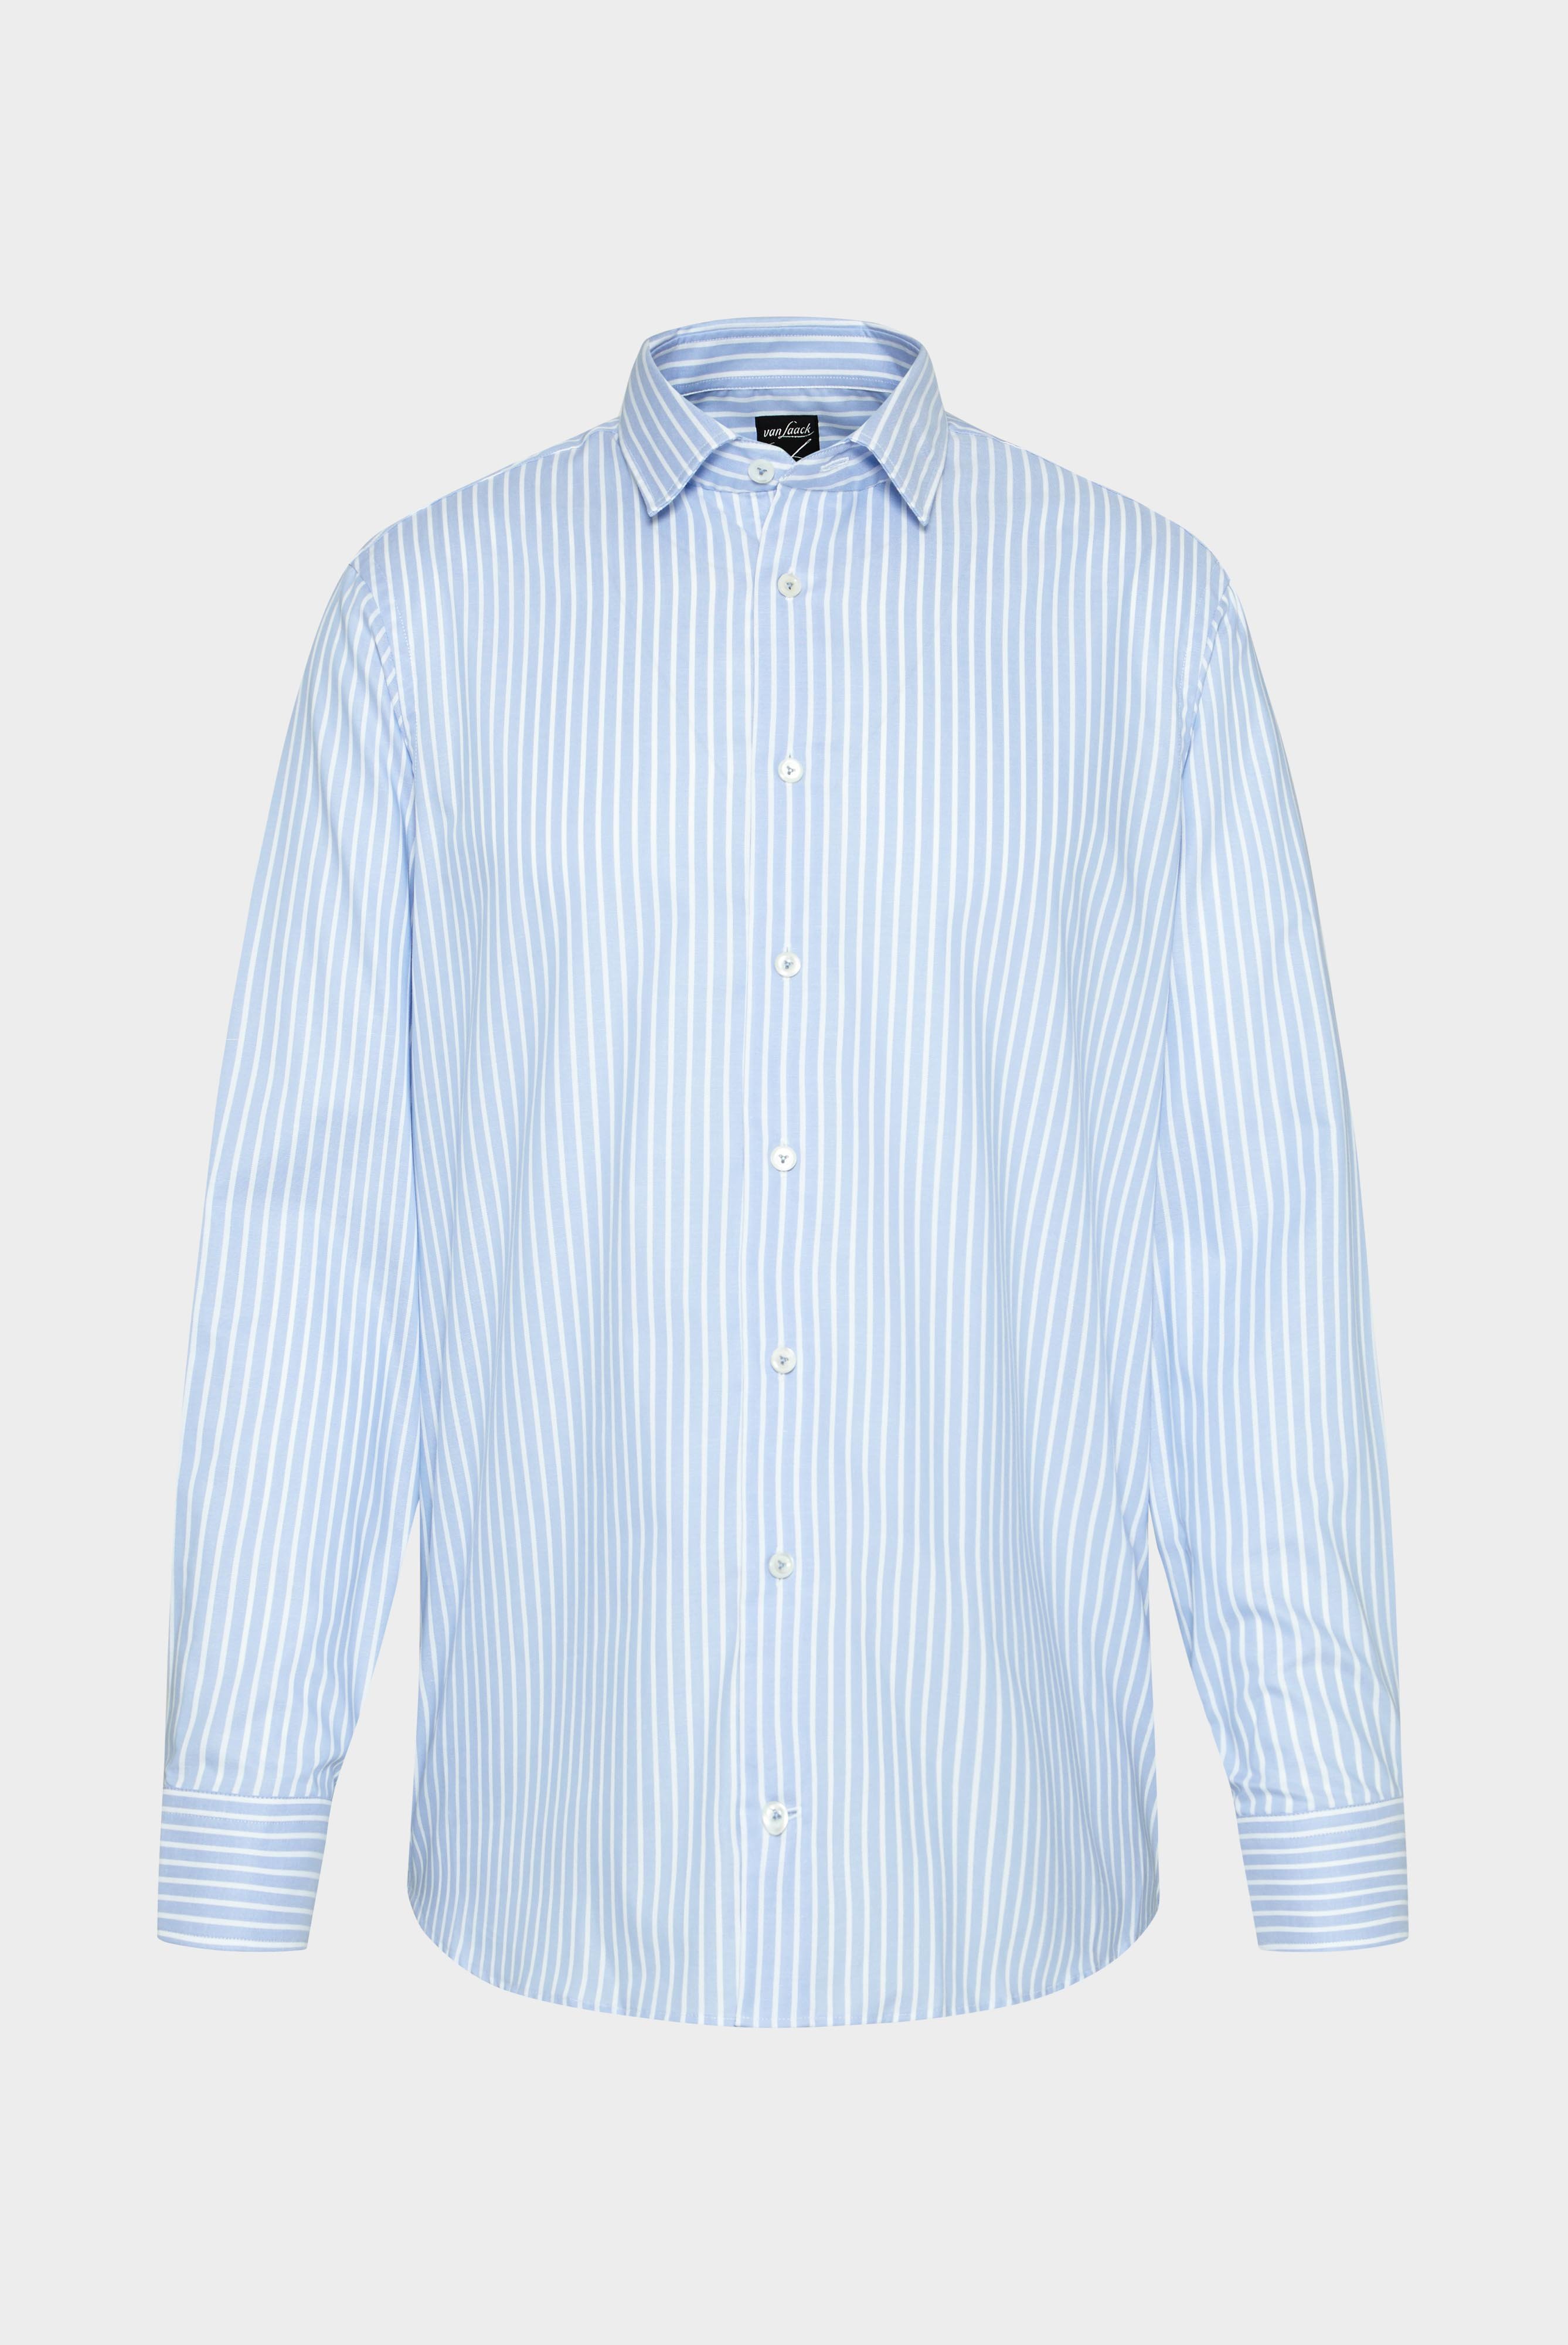 Bügelleichte Hemden+Bügelfreies Hemd aus Bio-Baumwolle Tailor Fit+20.3281.NV.166009.730.39